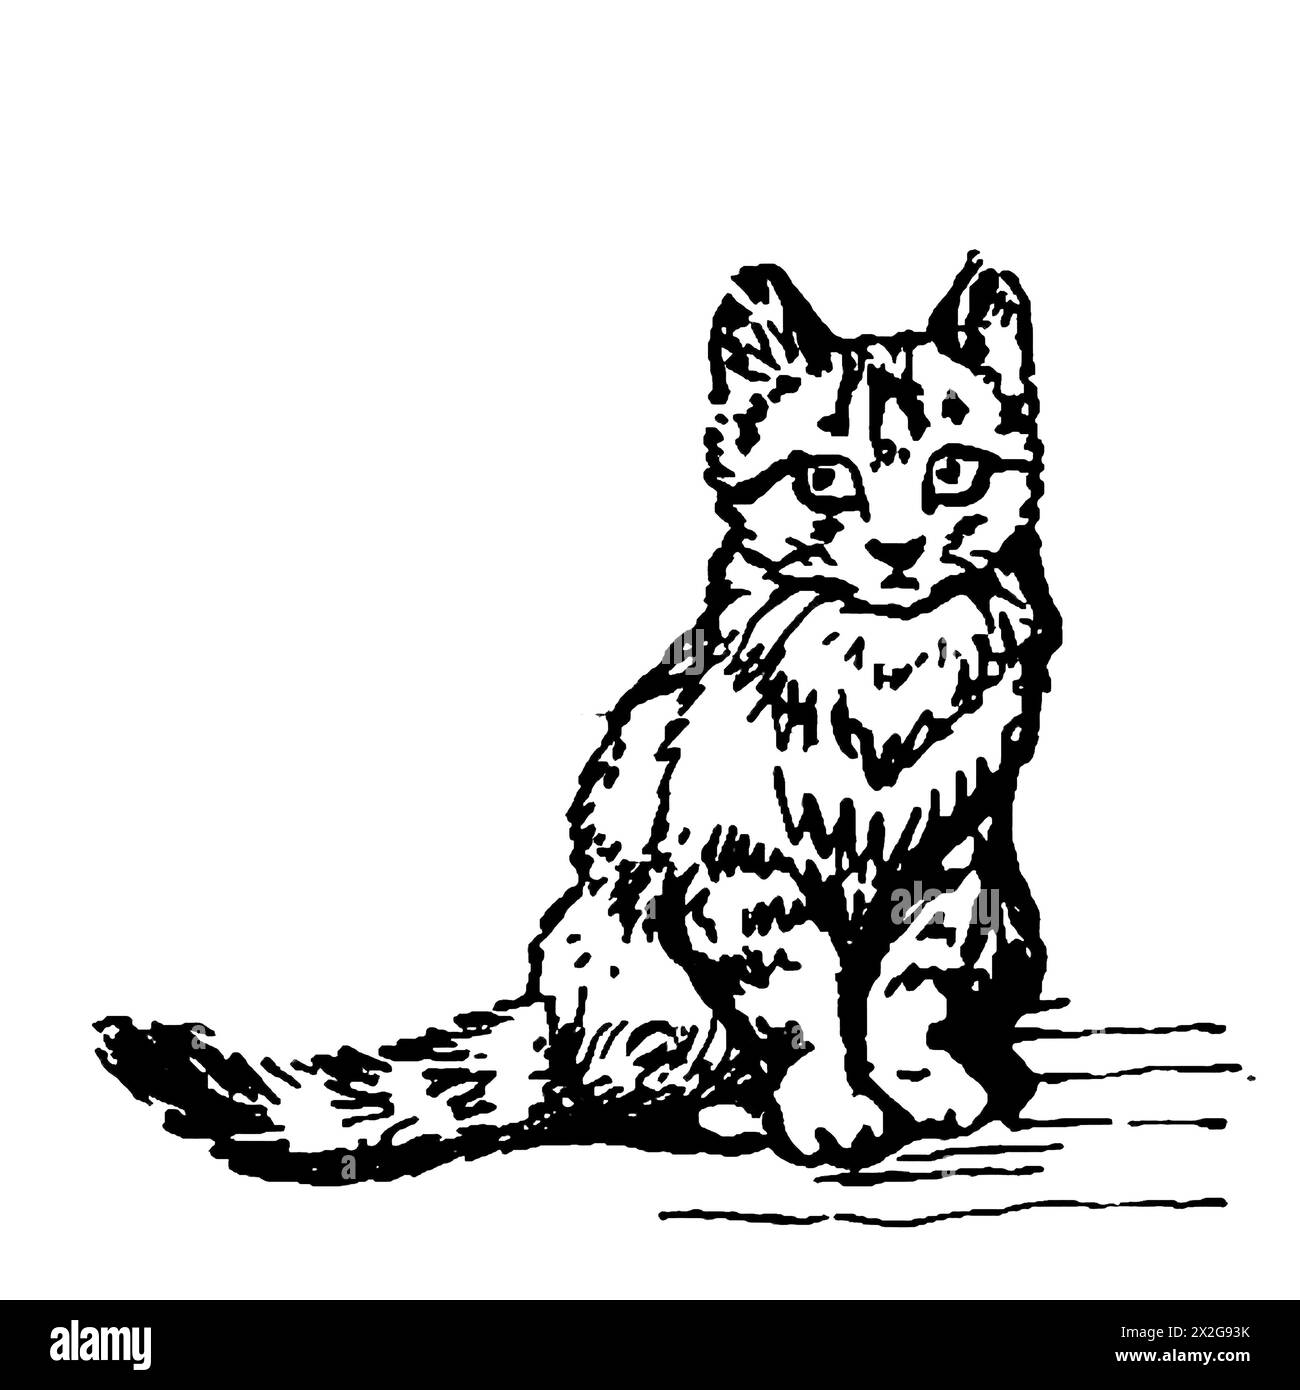 Schwarz-weiße Umrissskizze einer Katze Stockfoto